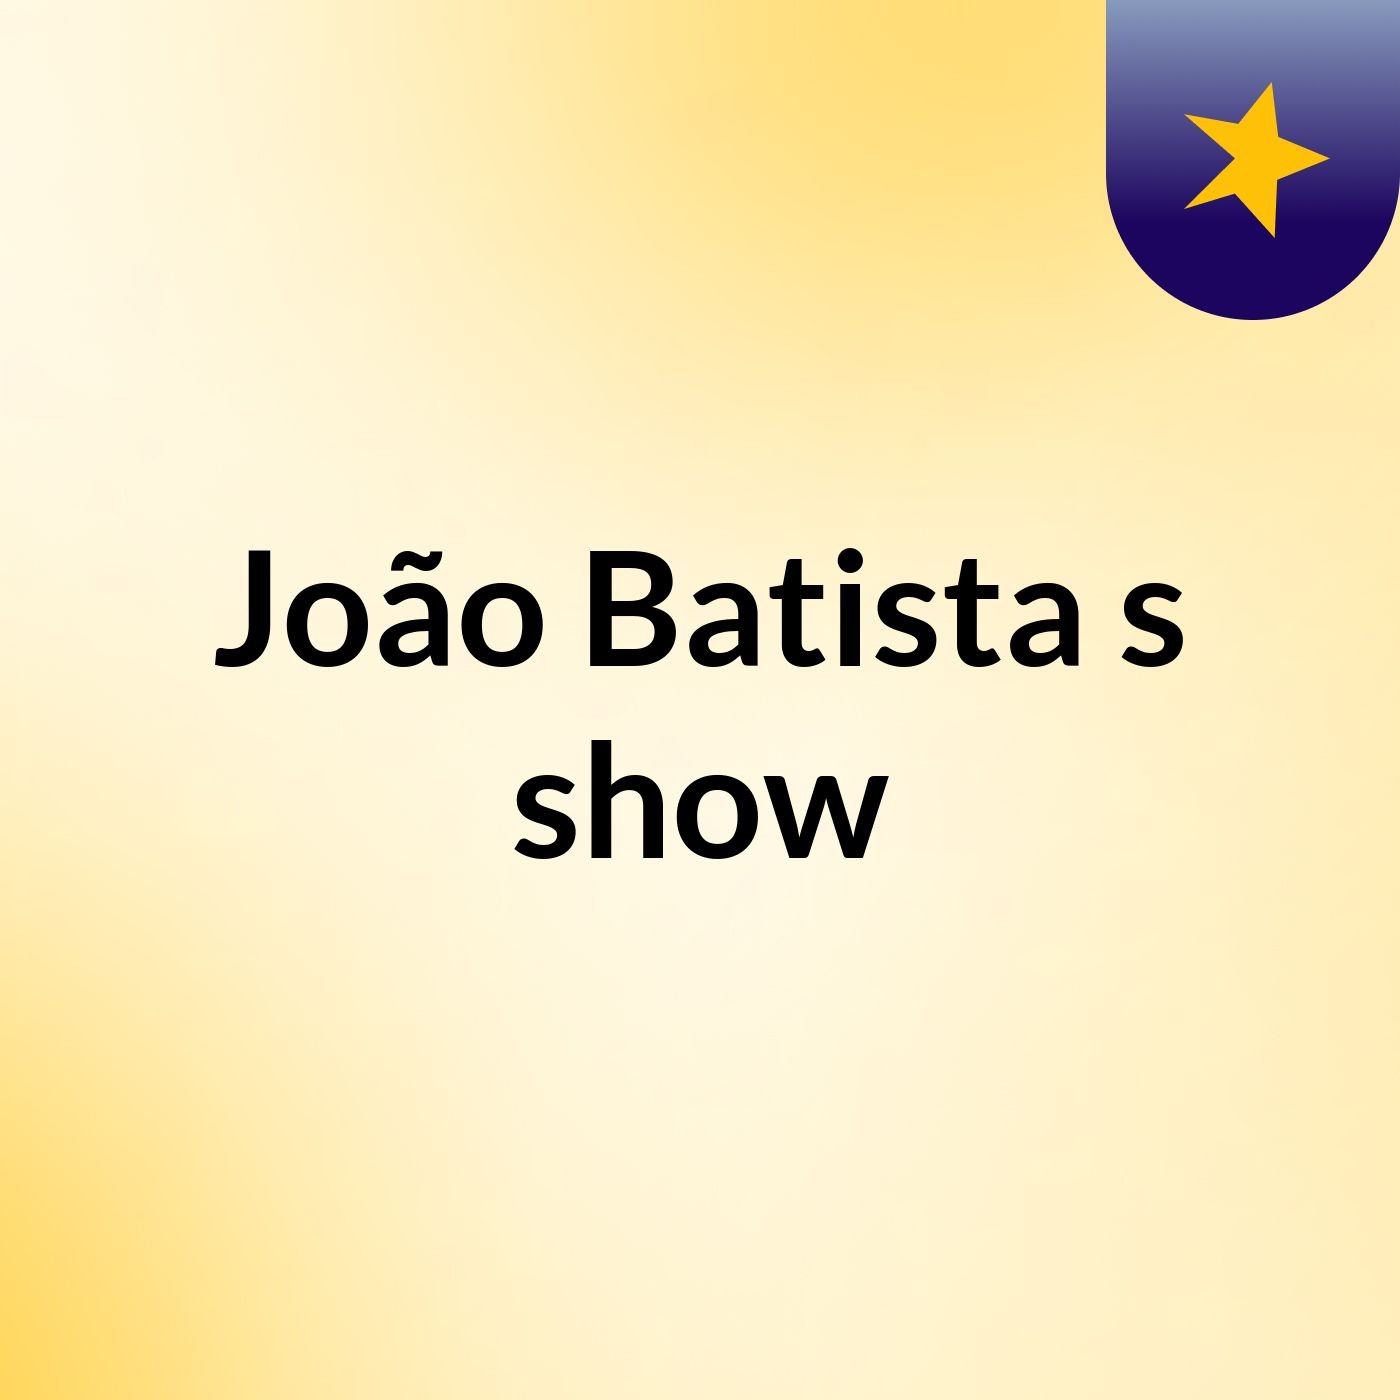 João Batista's show